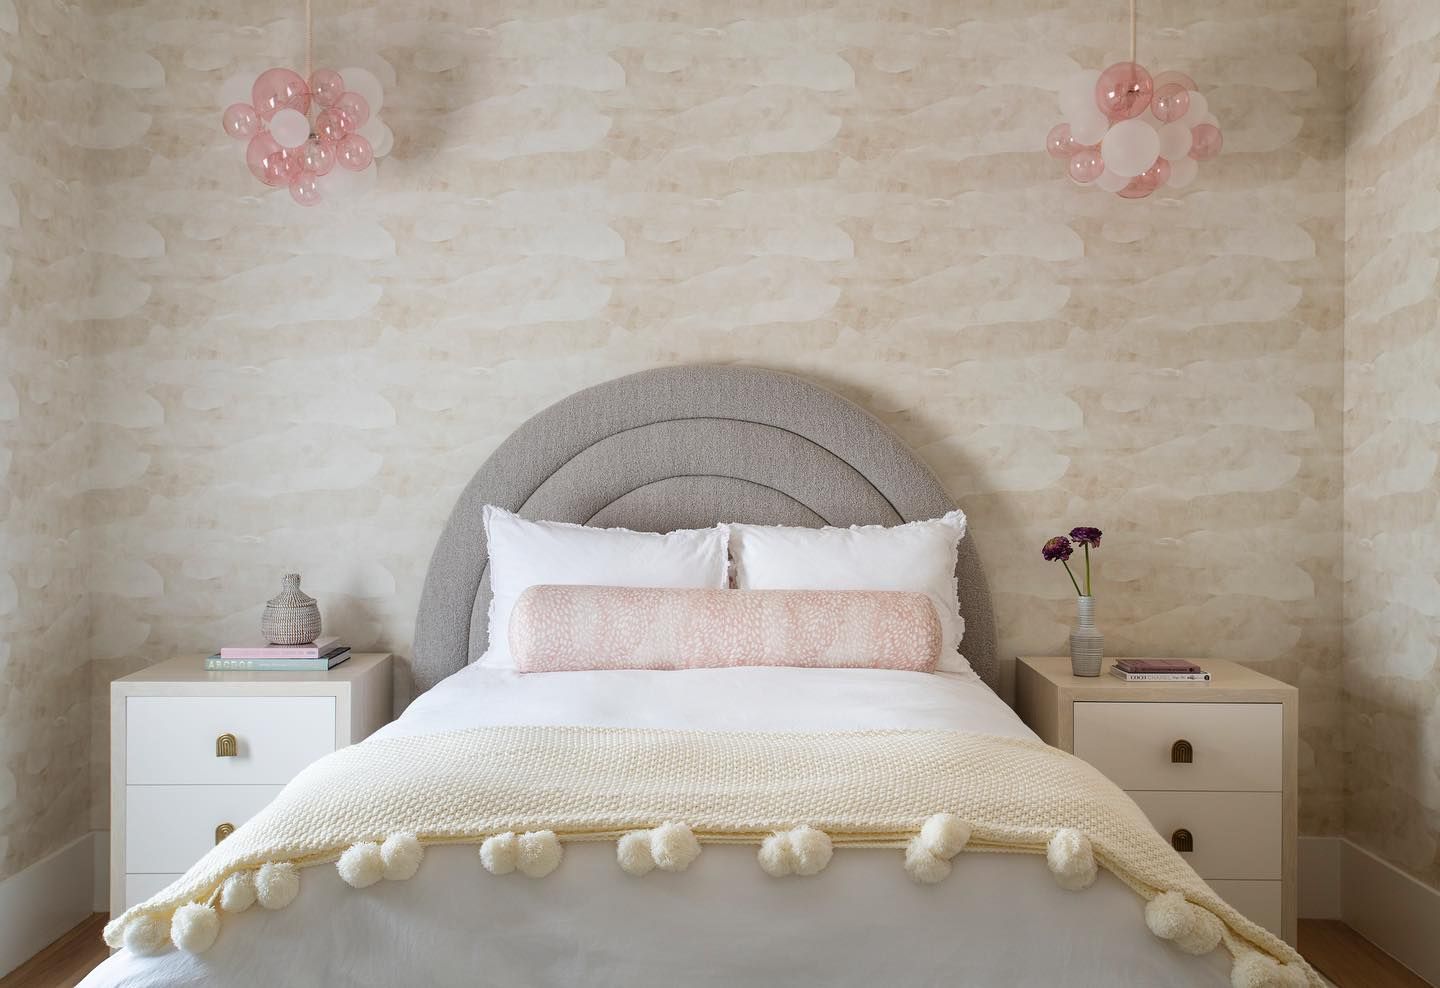 Girls bedroom ideas Pink Cloud lighting fixtures tarakantorinteriors